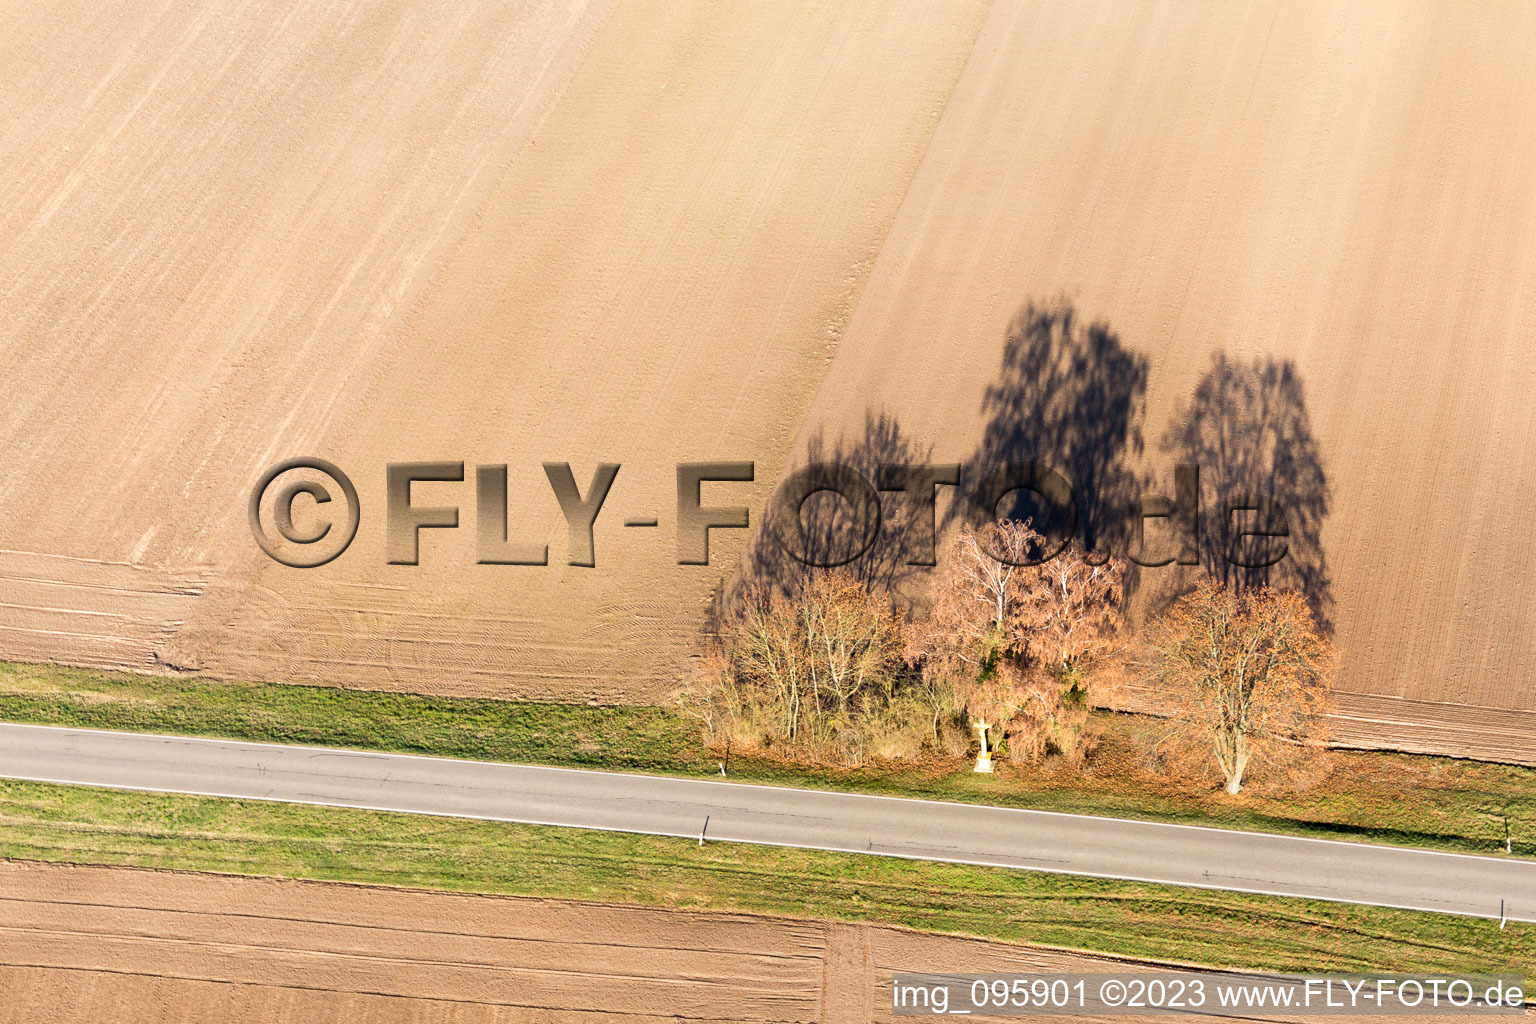 Hatzenbühl dans le département Rhénanie-Palatinat, Allemagne du point de vue du drone